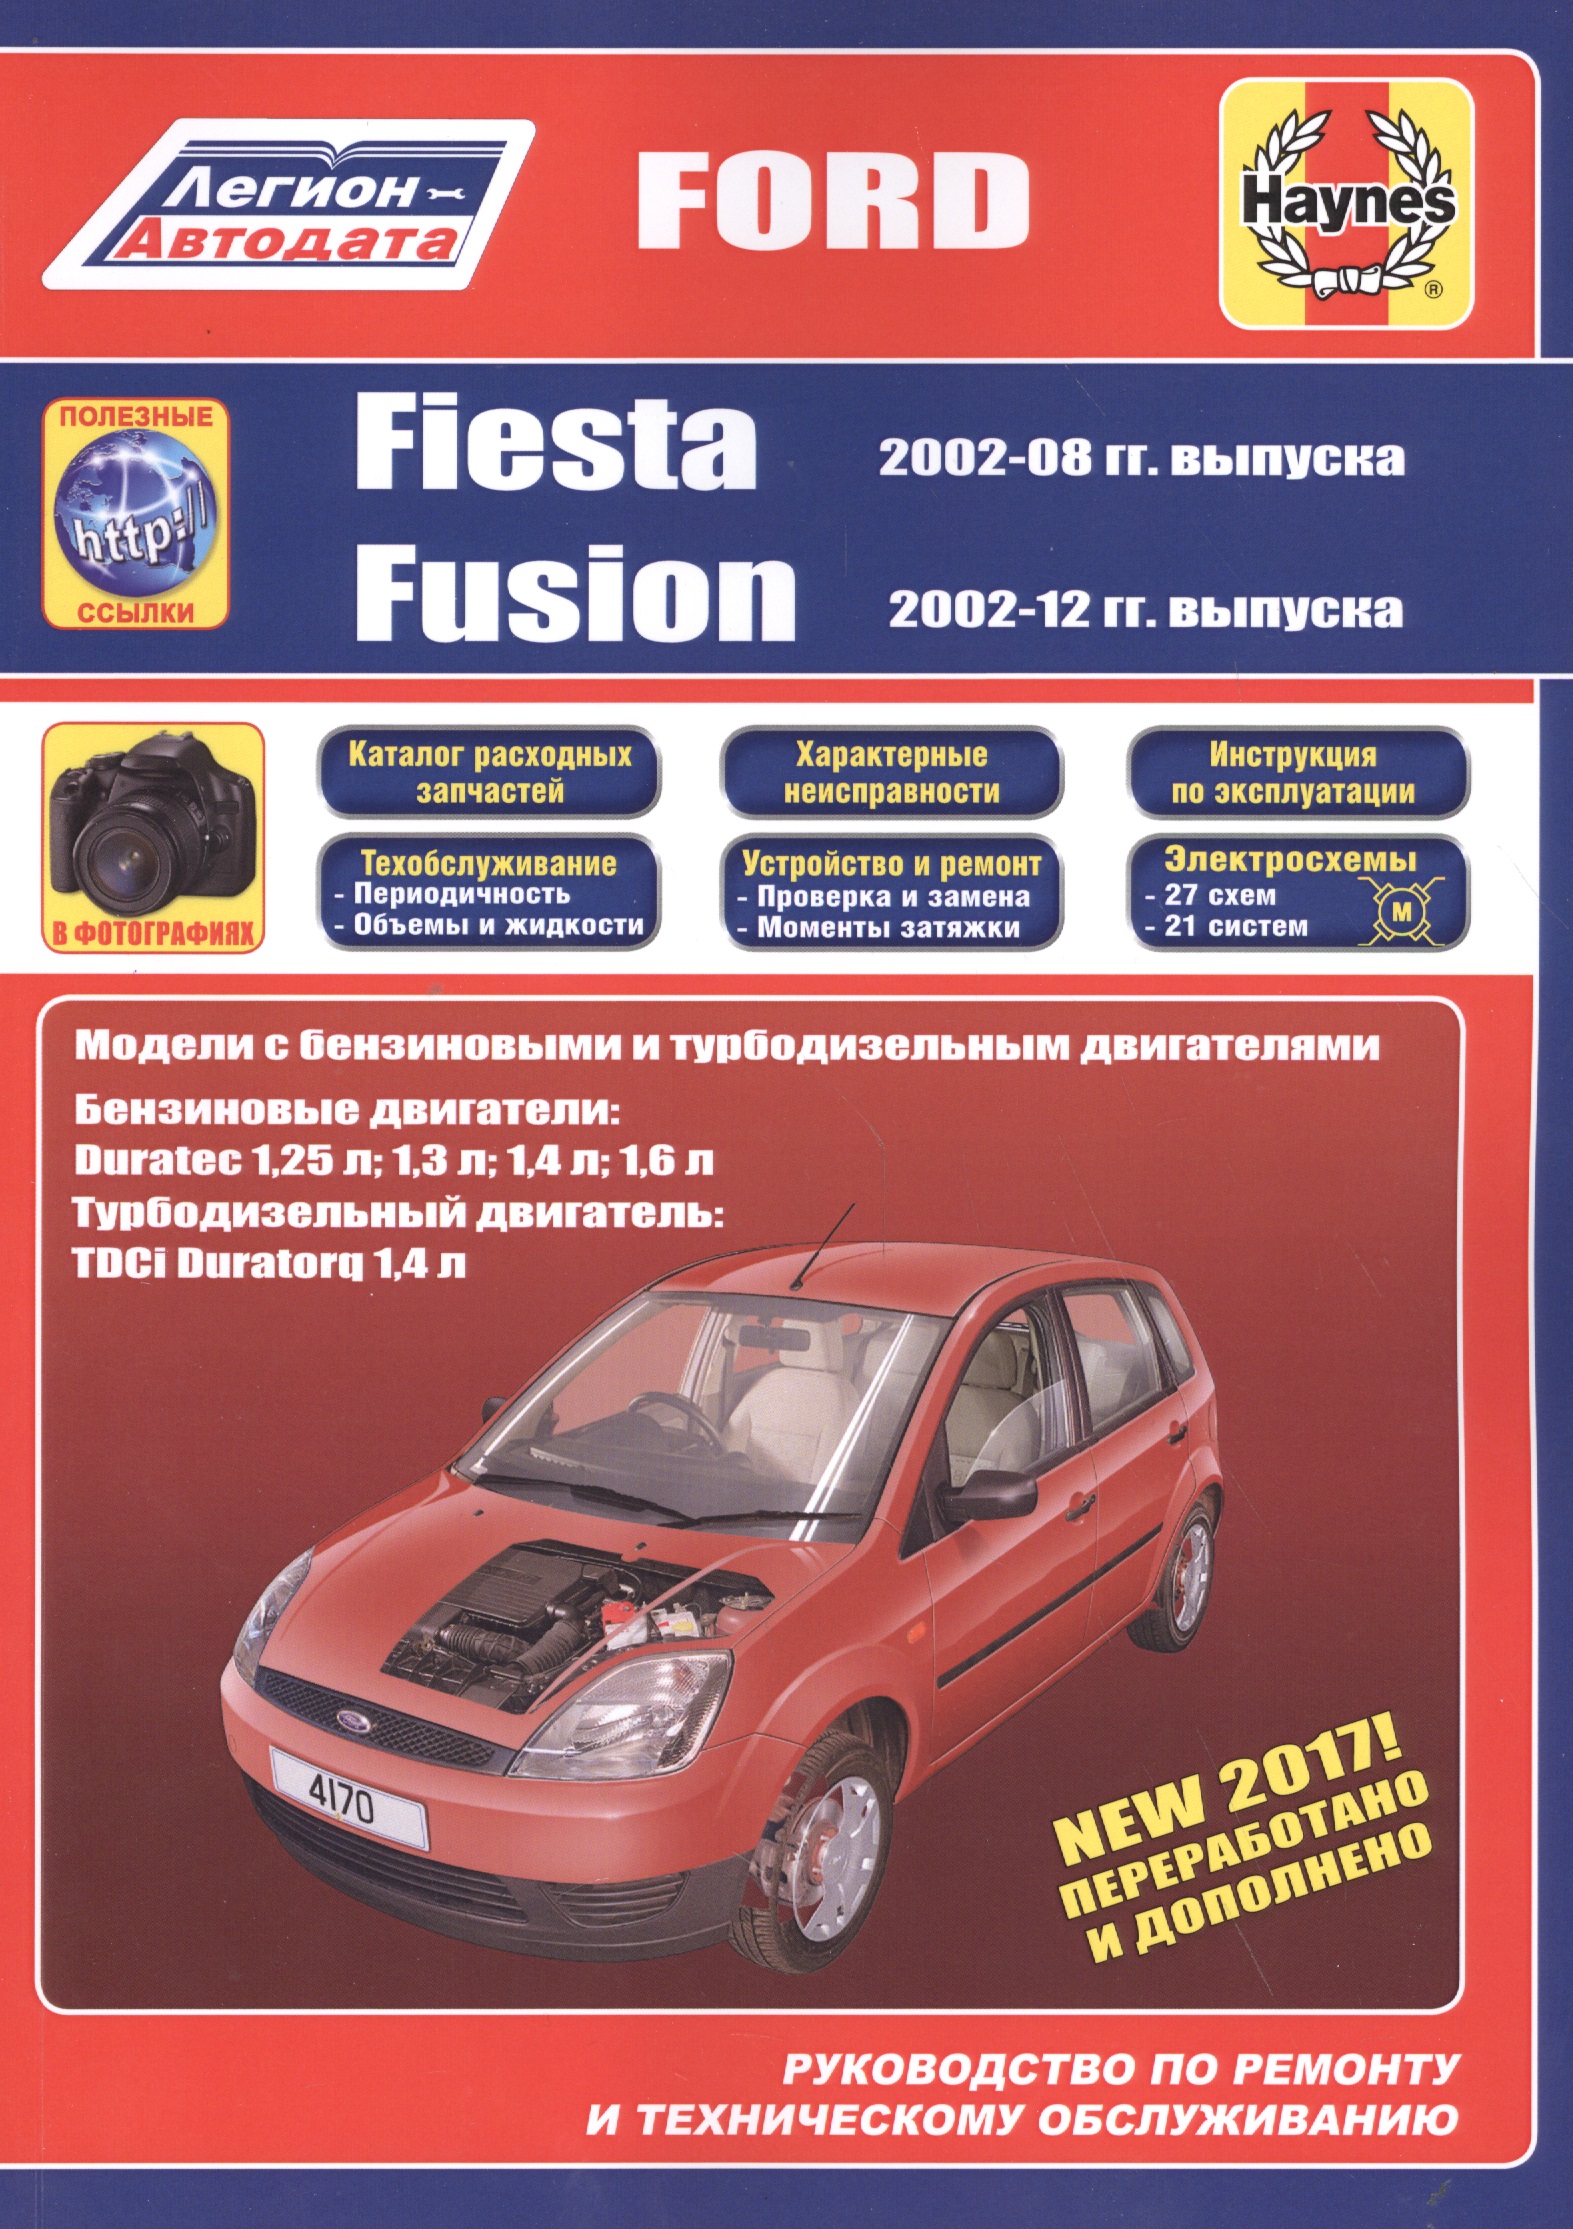 Ford Fiesta & Fusion 2002-08/12 бензин и дизель. Ремонт. Эксплуатация. ТО (ч/б фотографии+Каталог расходных з/ч, Характерные неисправности) 1481081 2s6t 432a98 af 1151275 2s6t 432a98 ae 1145288 tailgate lock motor actuator solenoid for ford fusion fiesta mk5 mk6